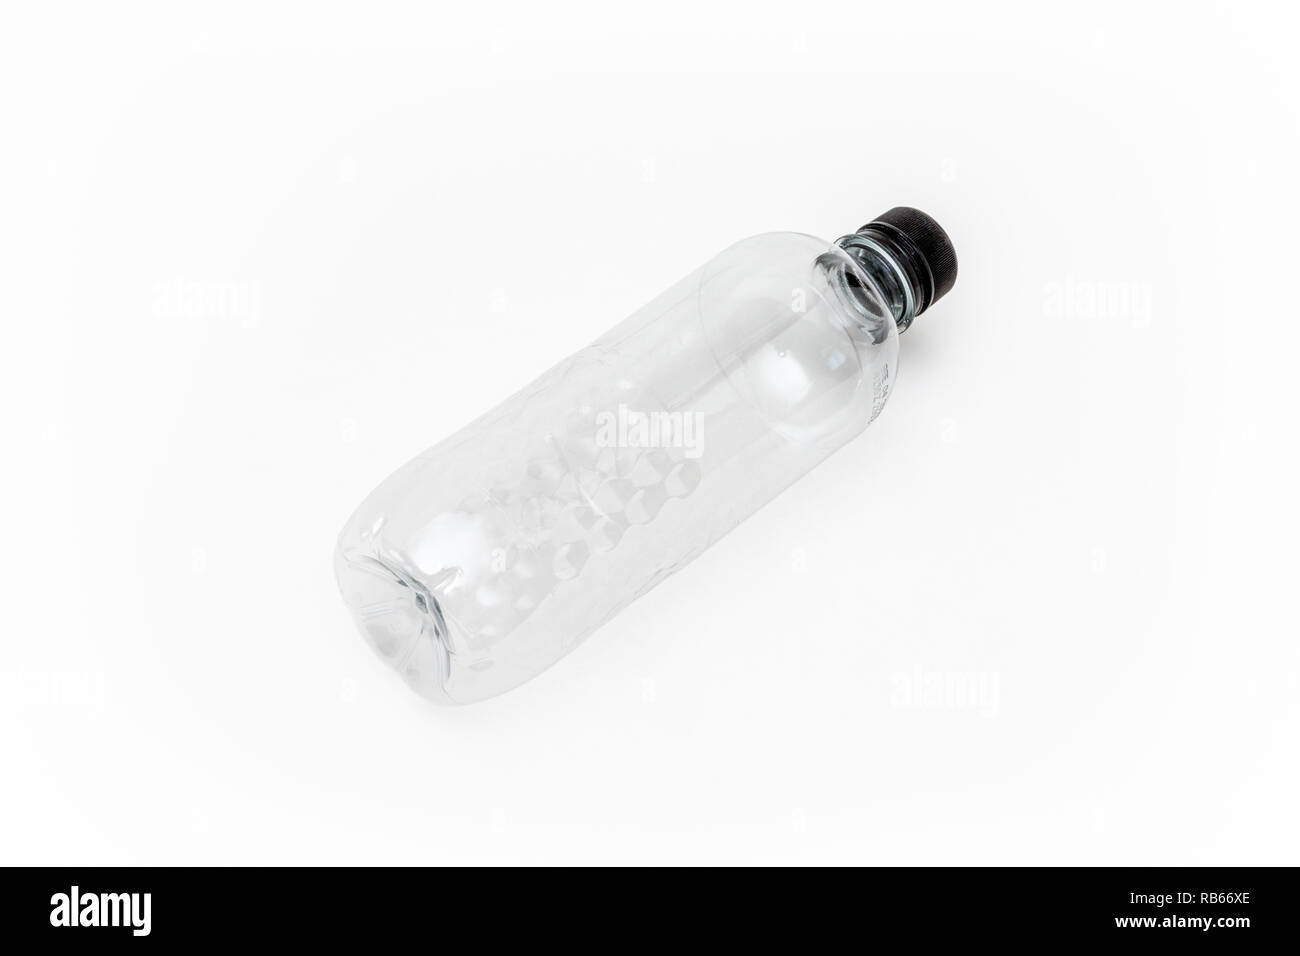 Un générique vide bouteille d'eau en plastique à usage unique sur un fond blanc, aucune étiquette Banque D'Images